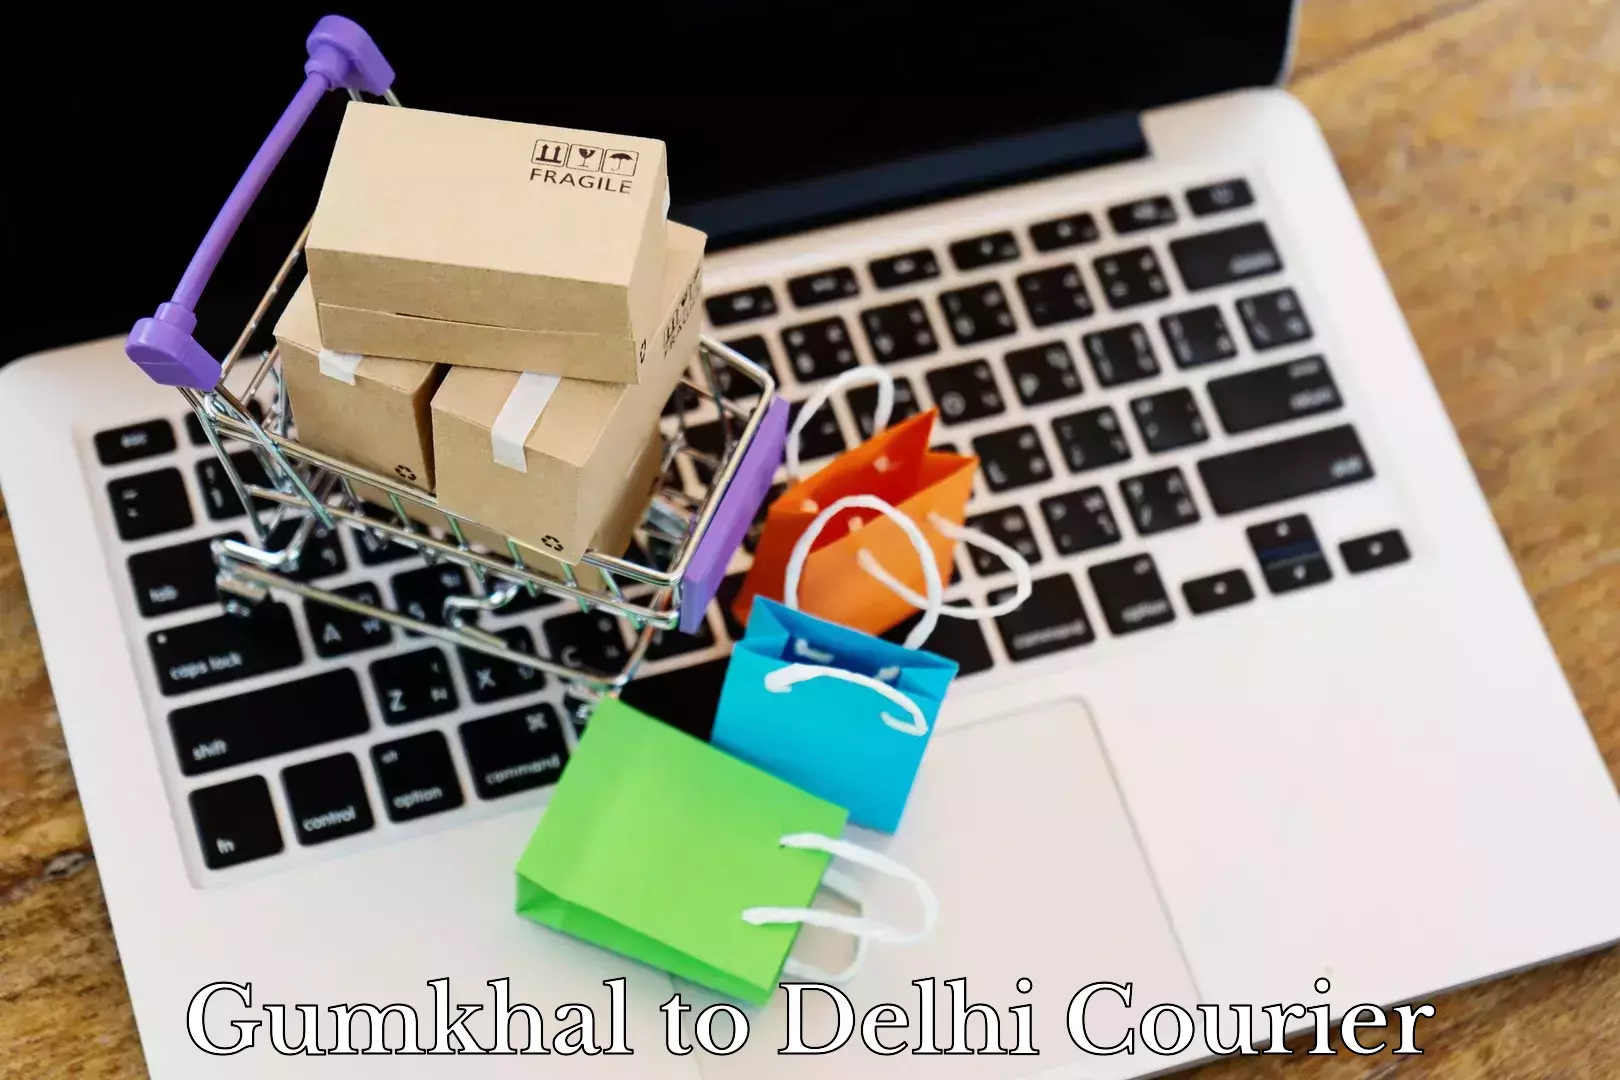 Luggage delivery app Gumkhal to Delhi